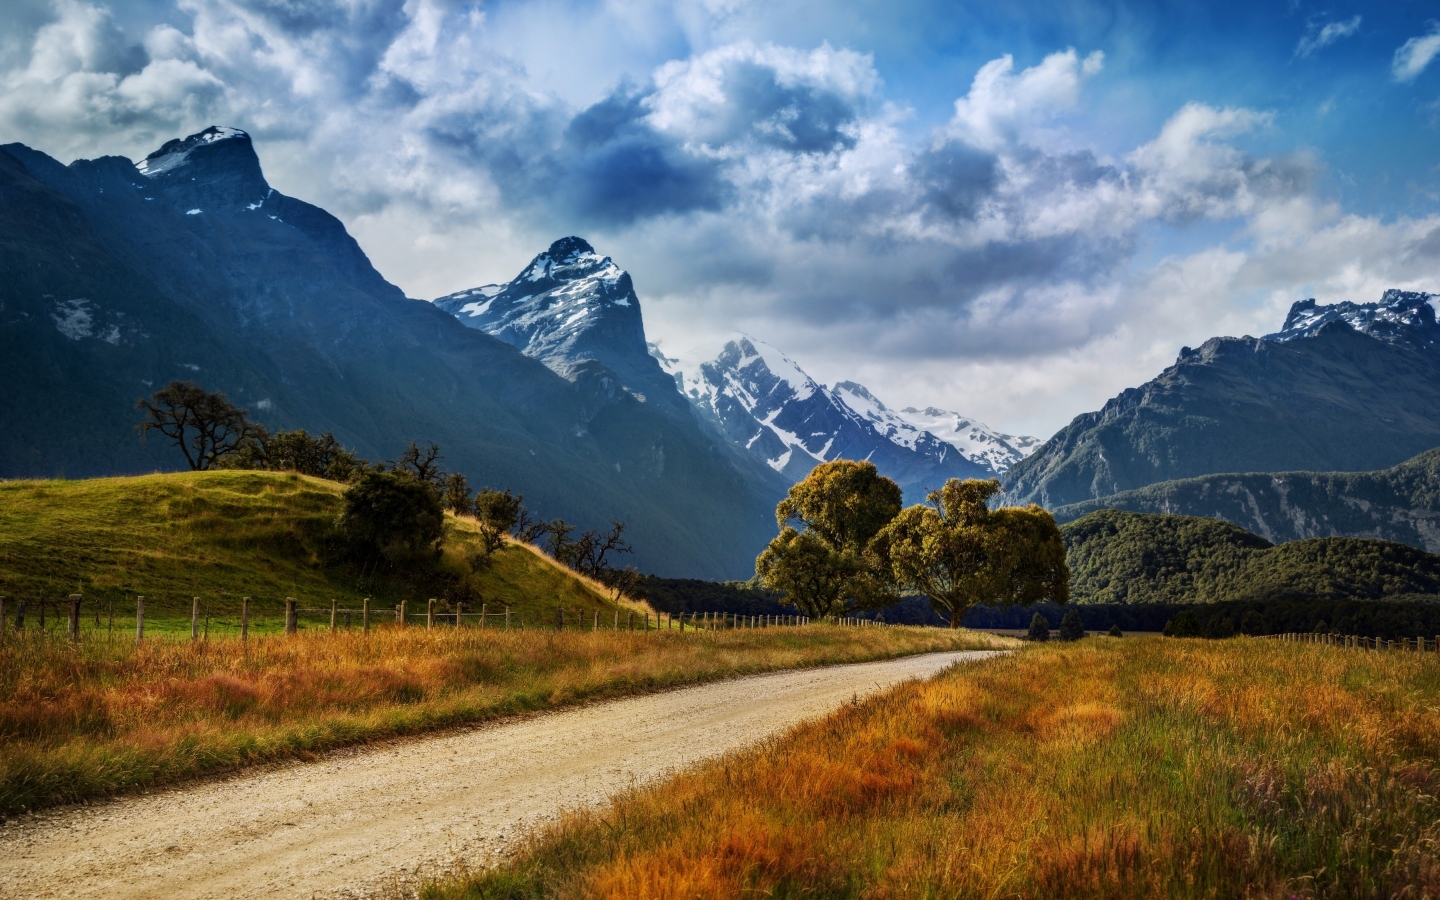 New Zealand Summer Landscape for 1440 x 900 widescreen resolution